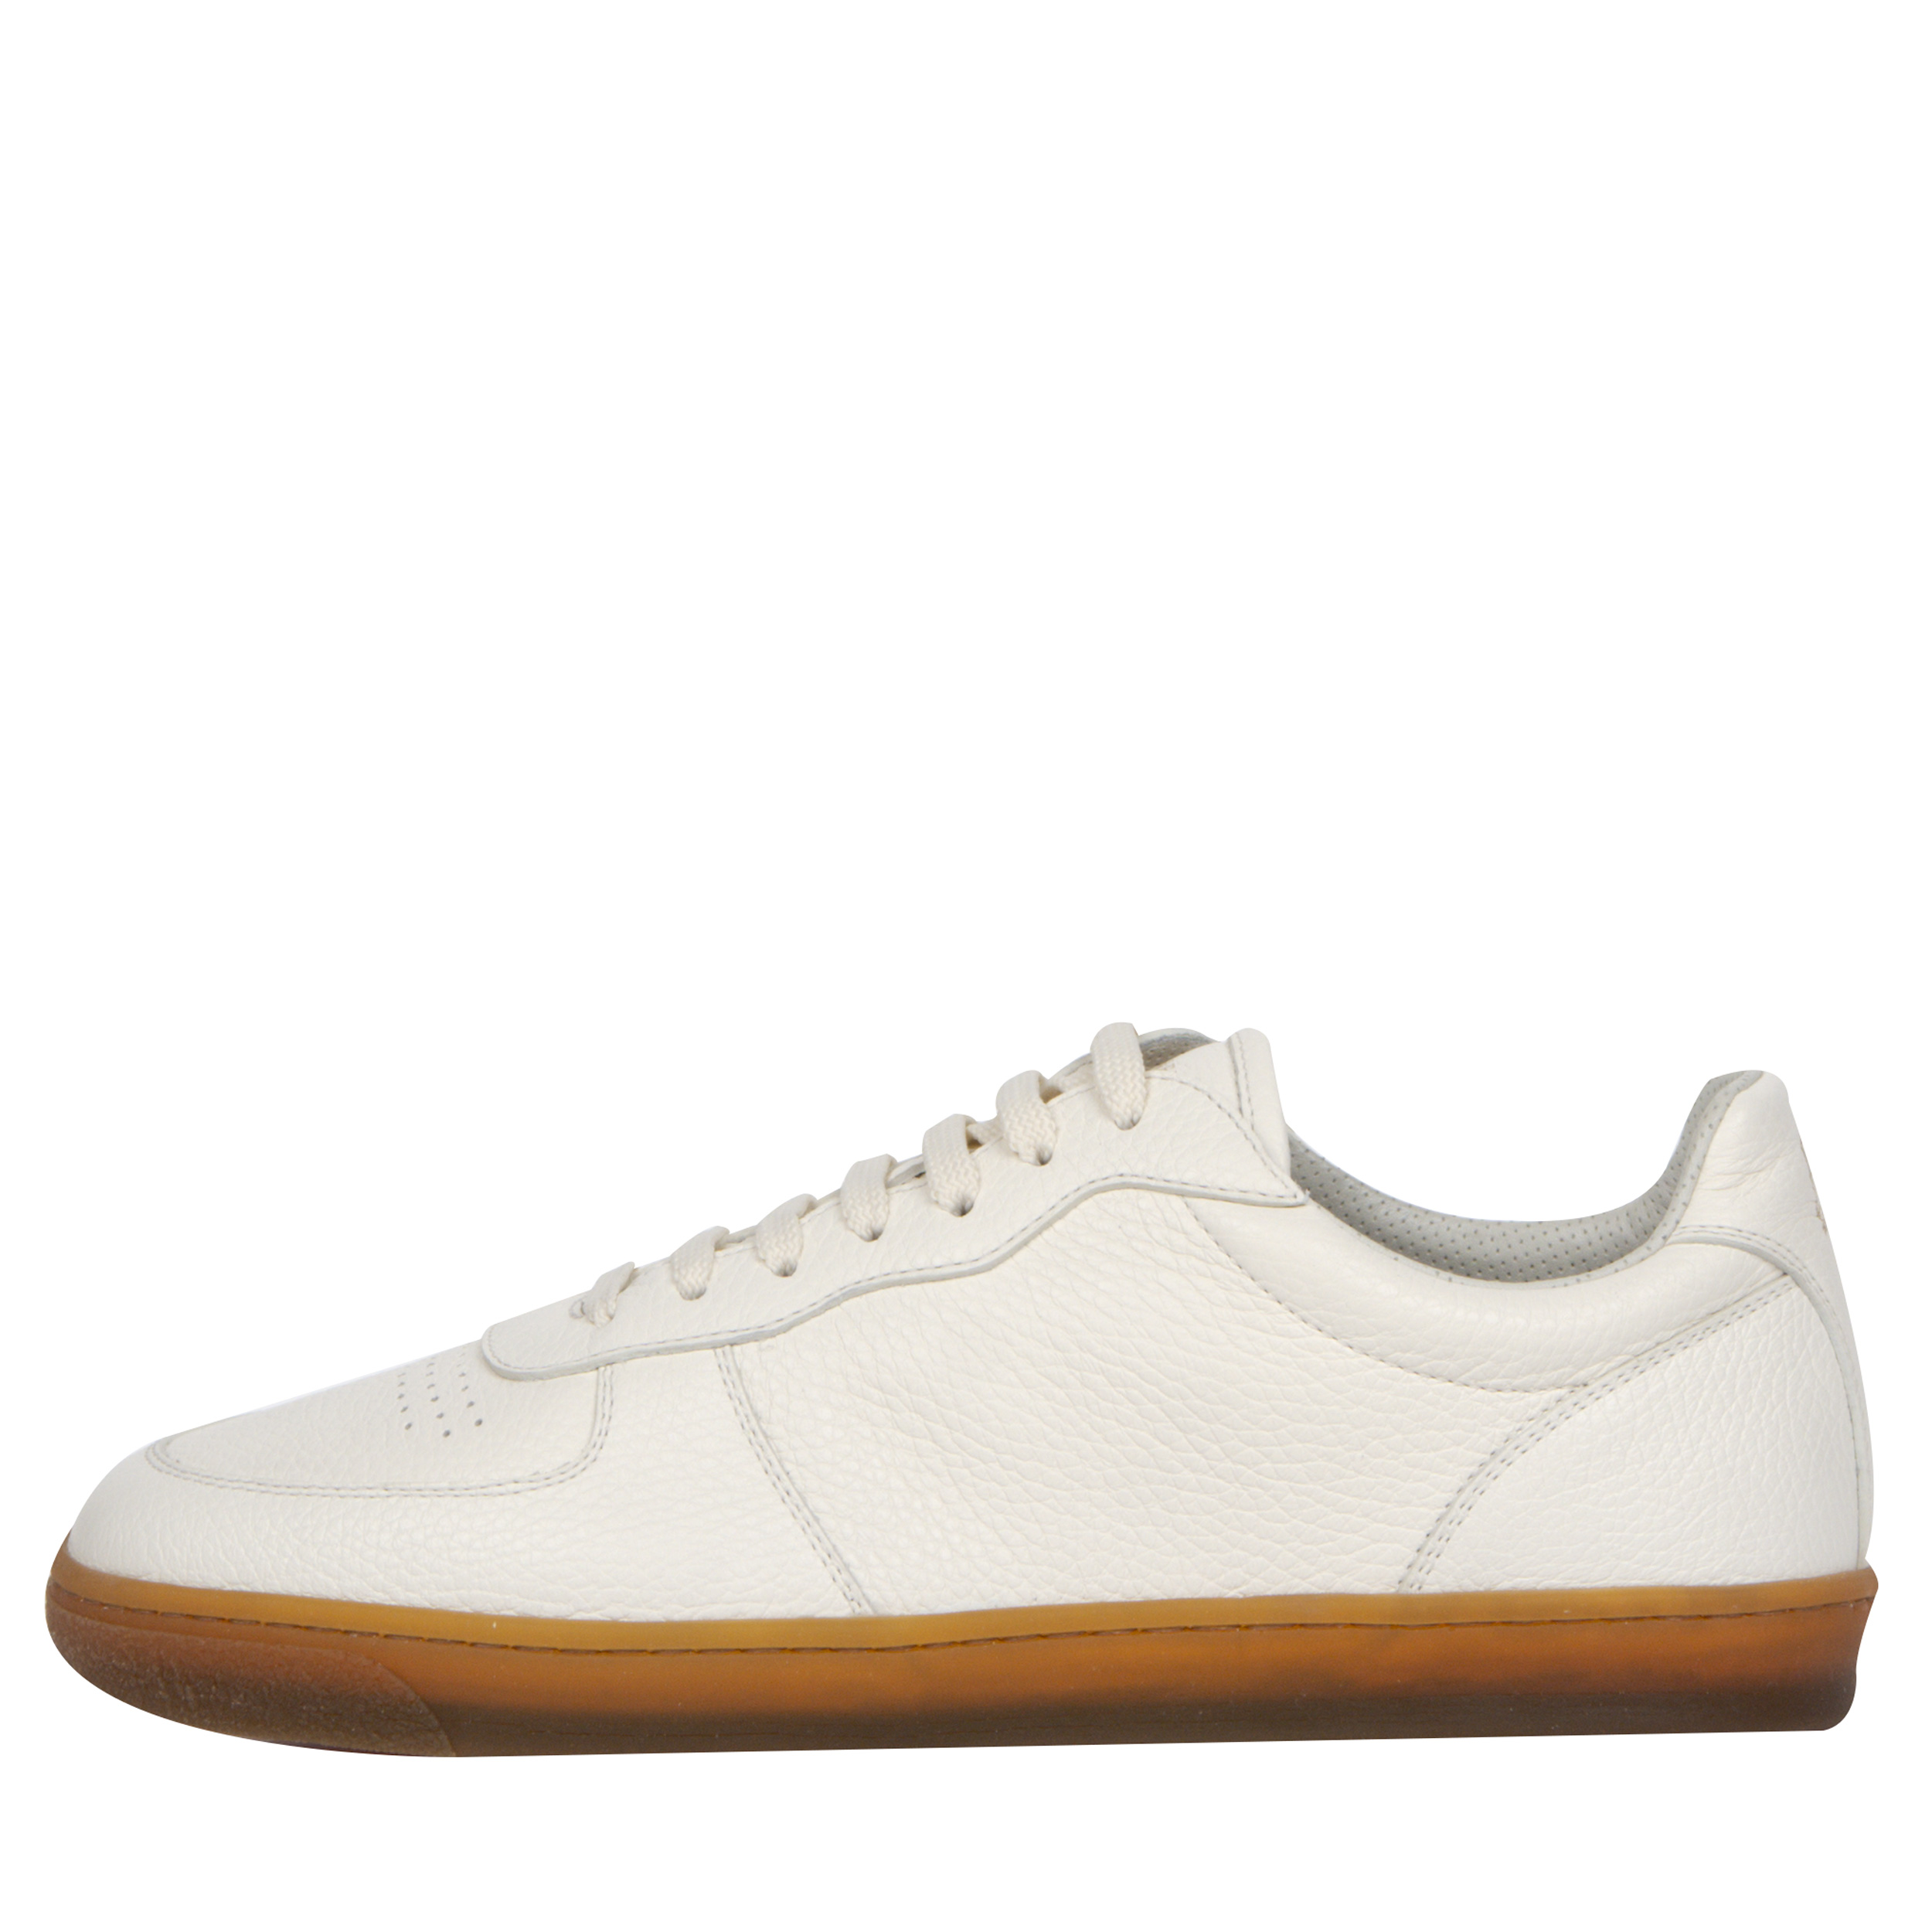 BRUNELLO CUCINELLI ’Grained Leather’ Gum Sole Sneakers White